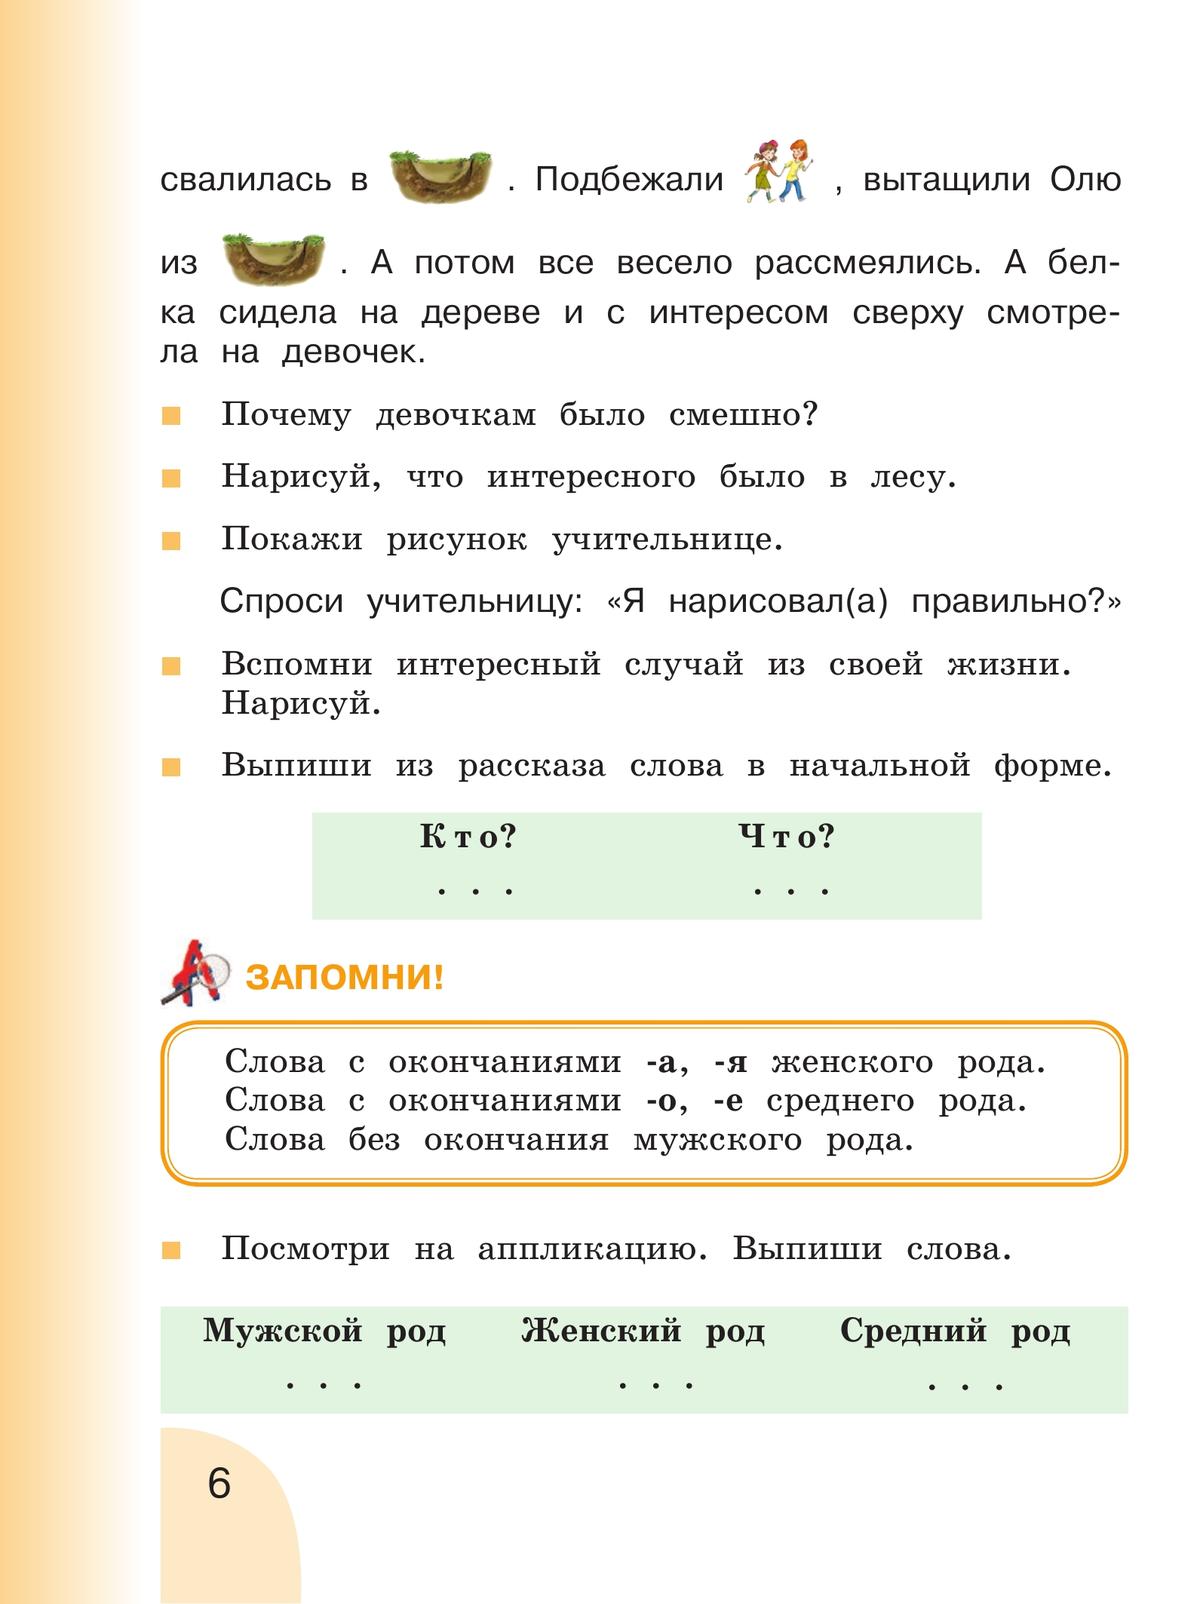 Русский язык. Развитие речи. 2 класс. Учебник. В 2 ч. Часть 1 (для глухих обучающихся) 6